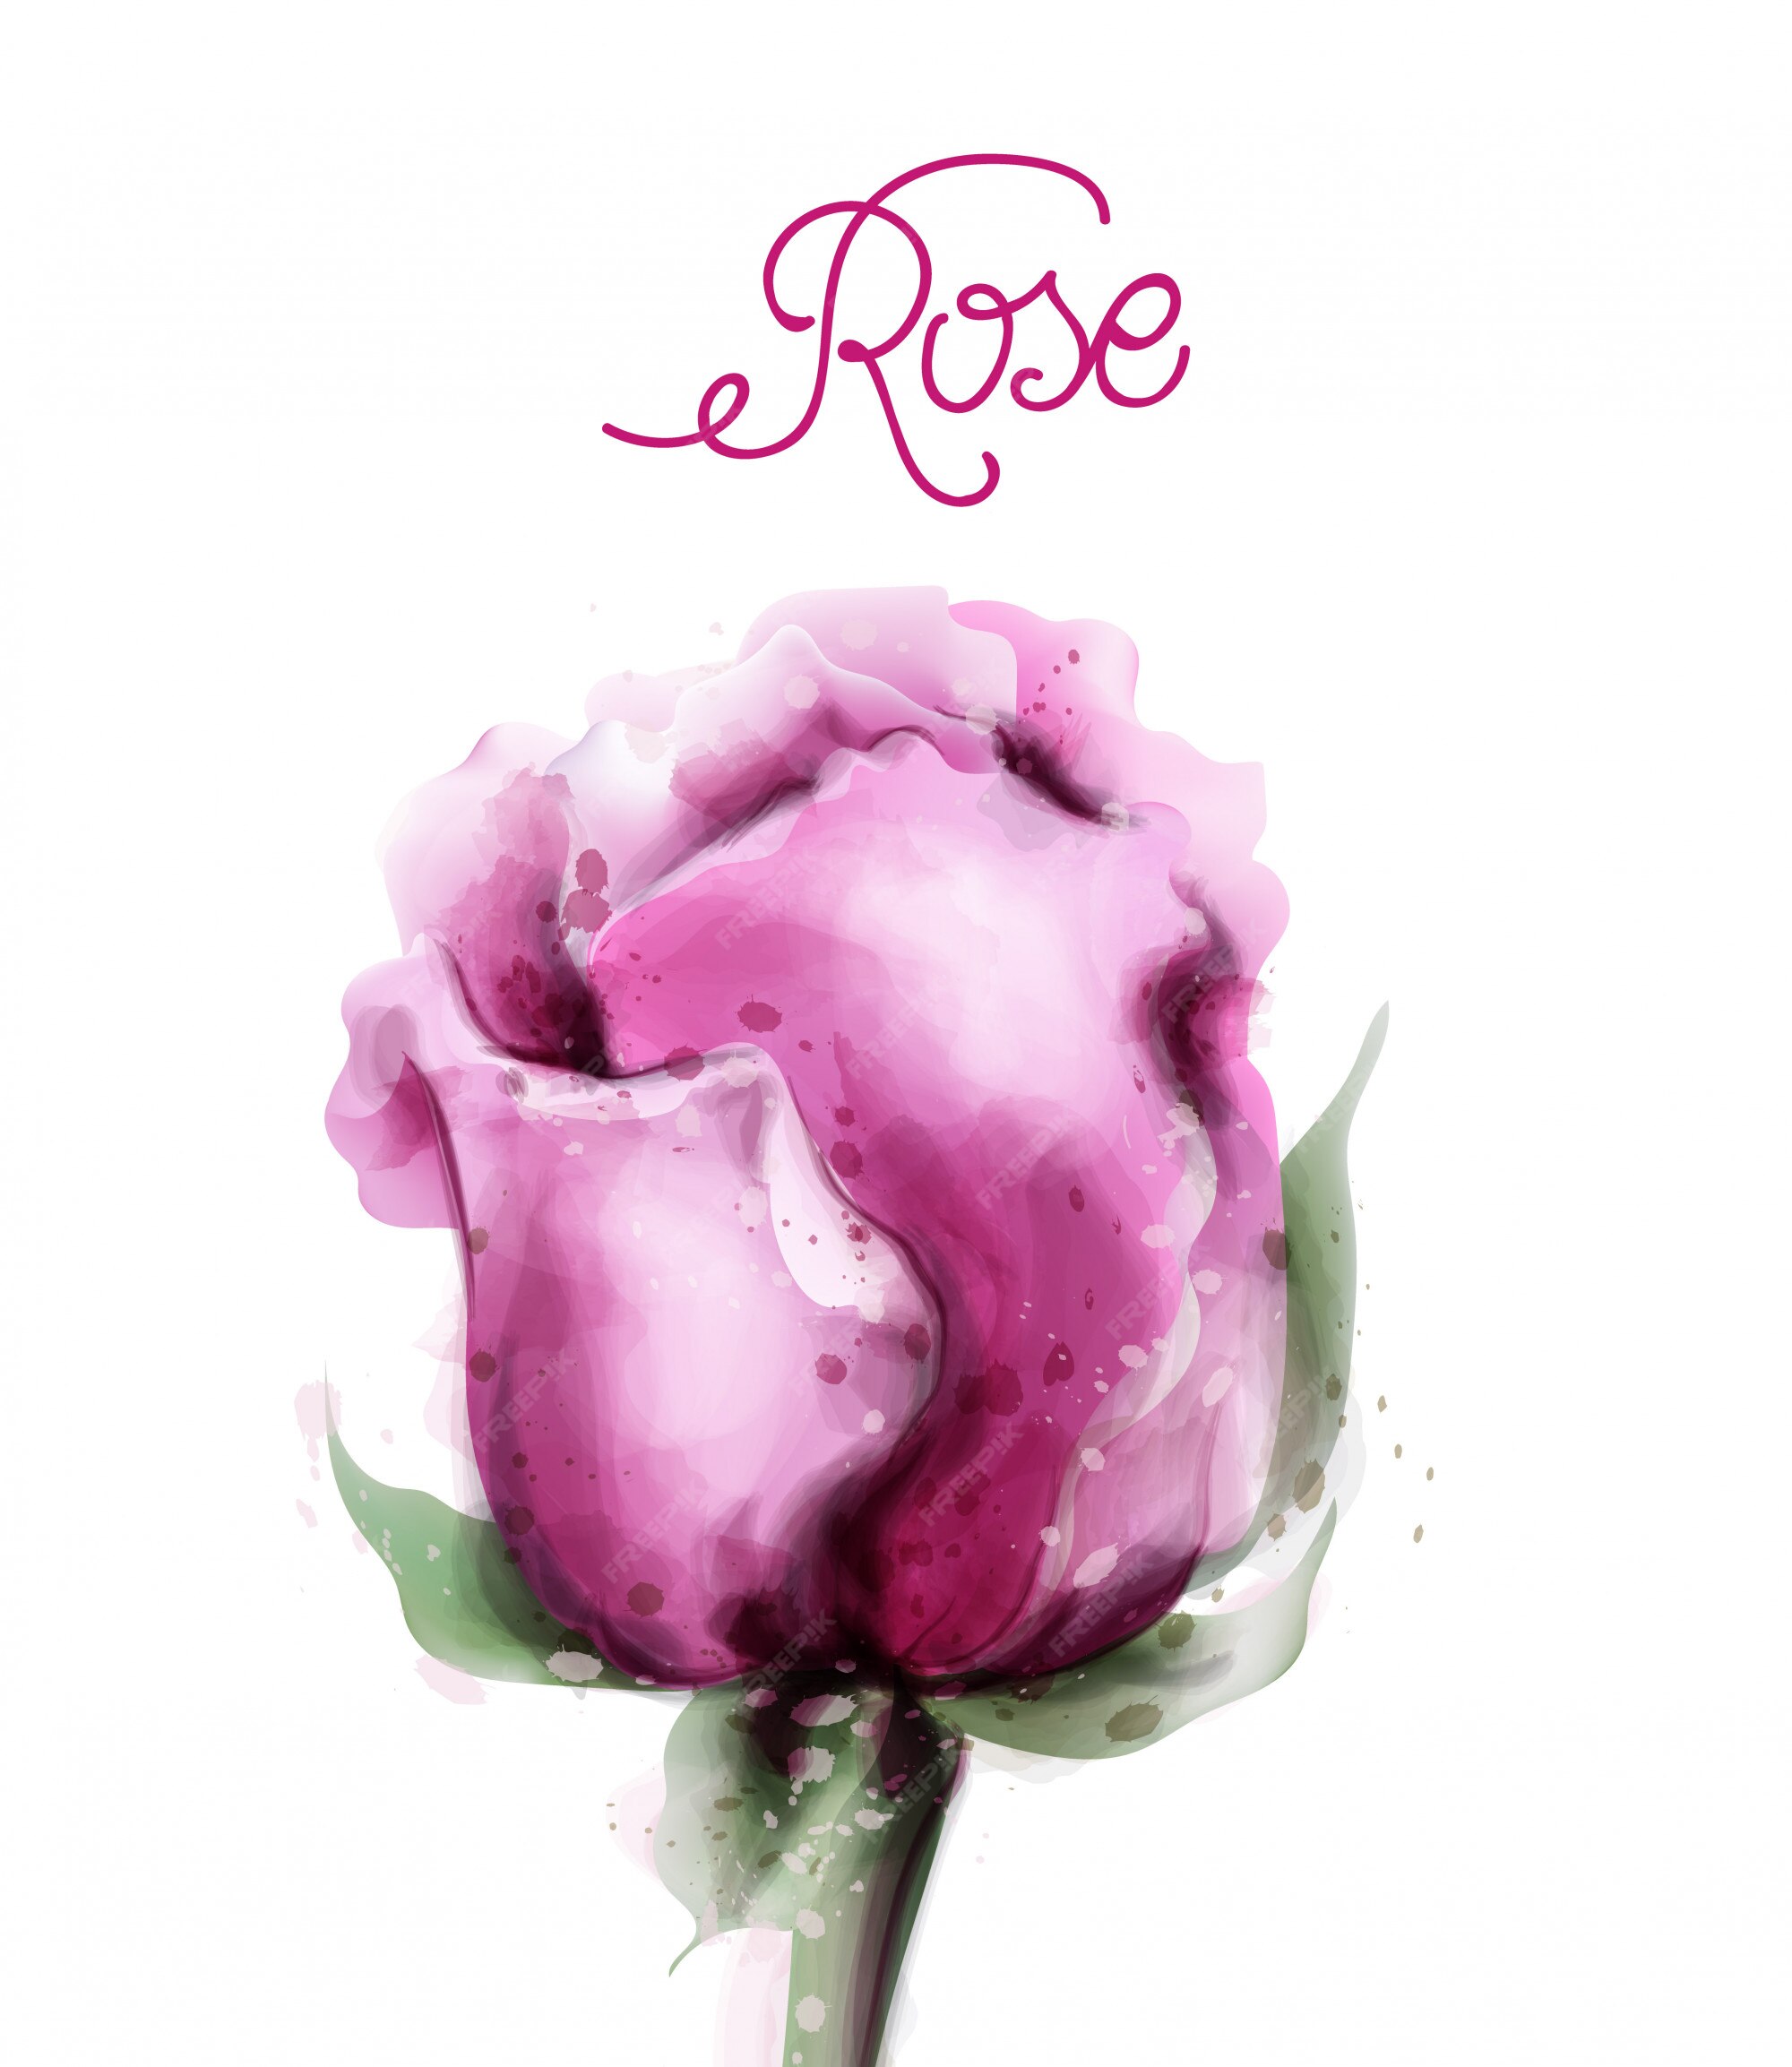 Premium Vector | Rose flower in watercolor